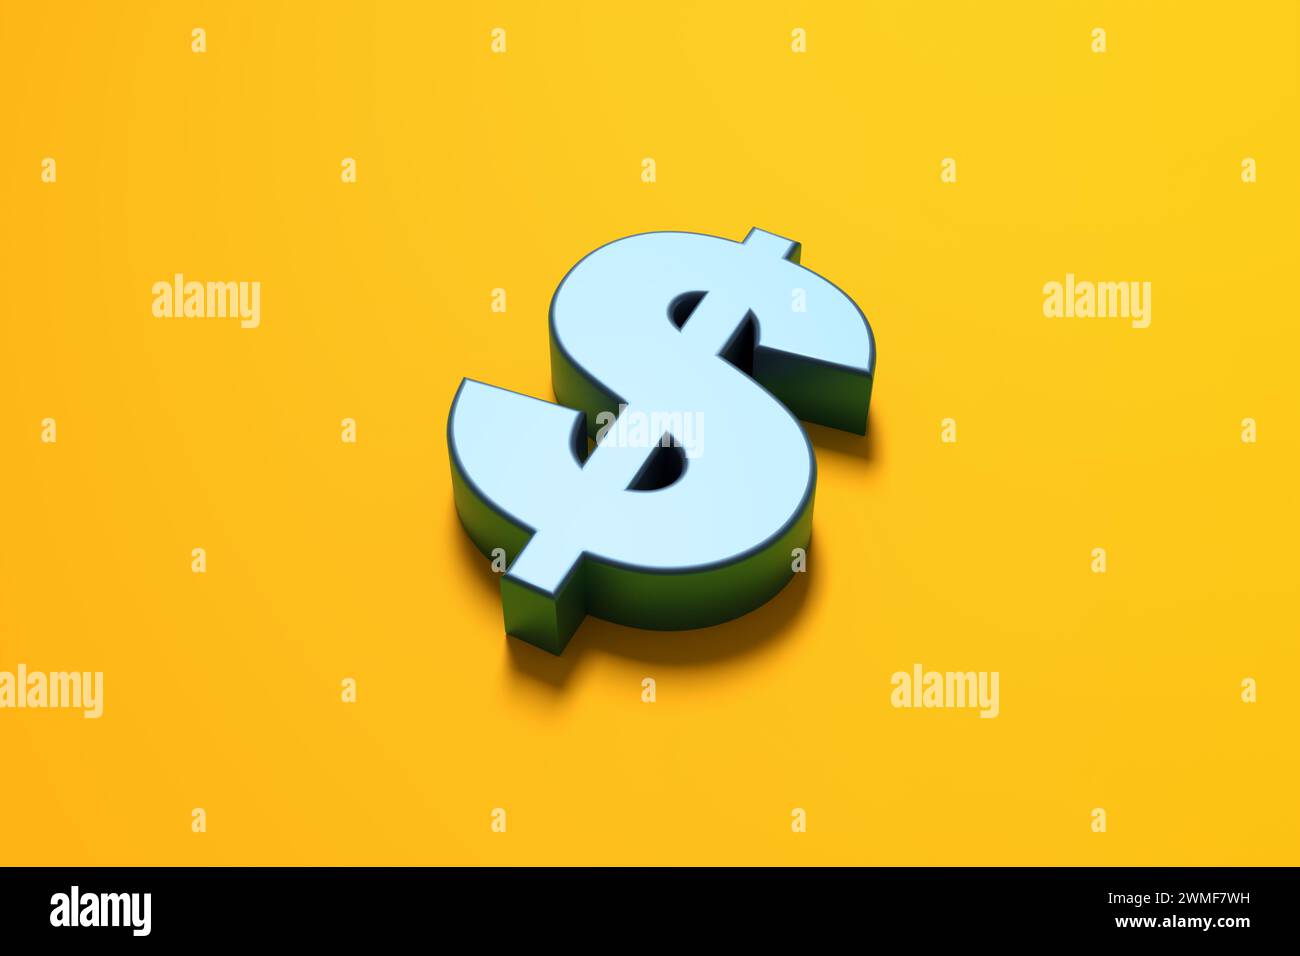 Symbole monétaire bleu métallique du dollar américain sur fond jaune. Concept commercial et financier. Rendu 3D. Banque D'Images